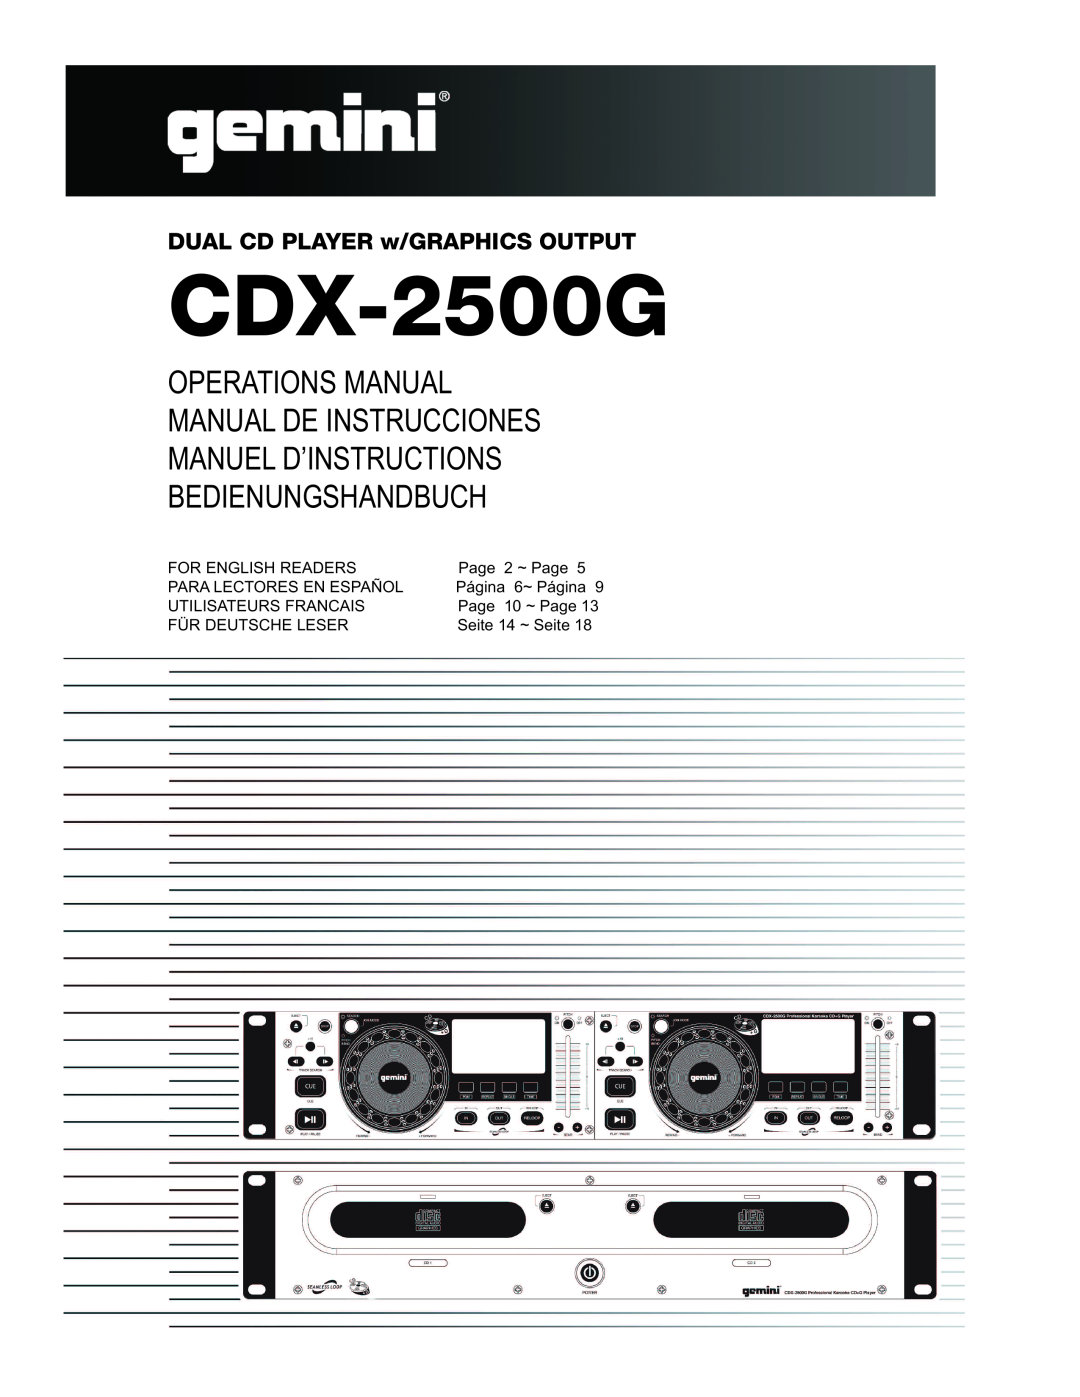 Gemini CDX-2500G manual Operations Manual Manual De Instrucciones, Manuel D’Instructions Bedienungshandbuch 